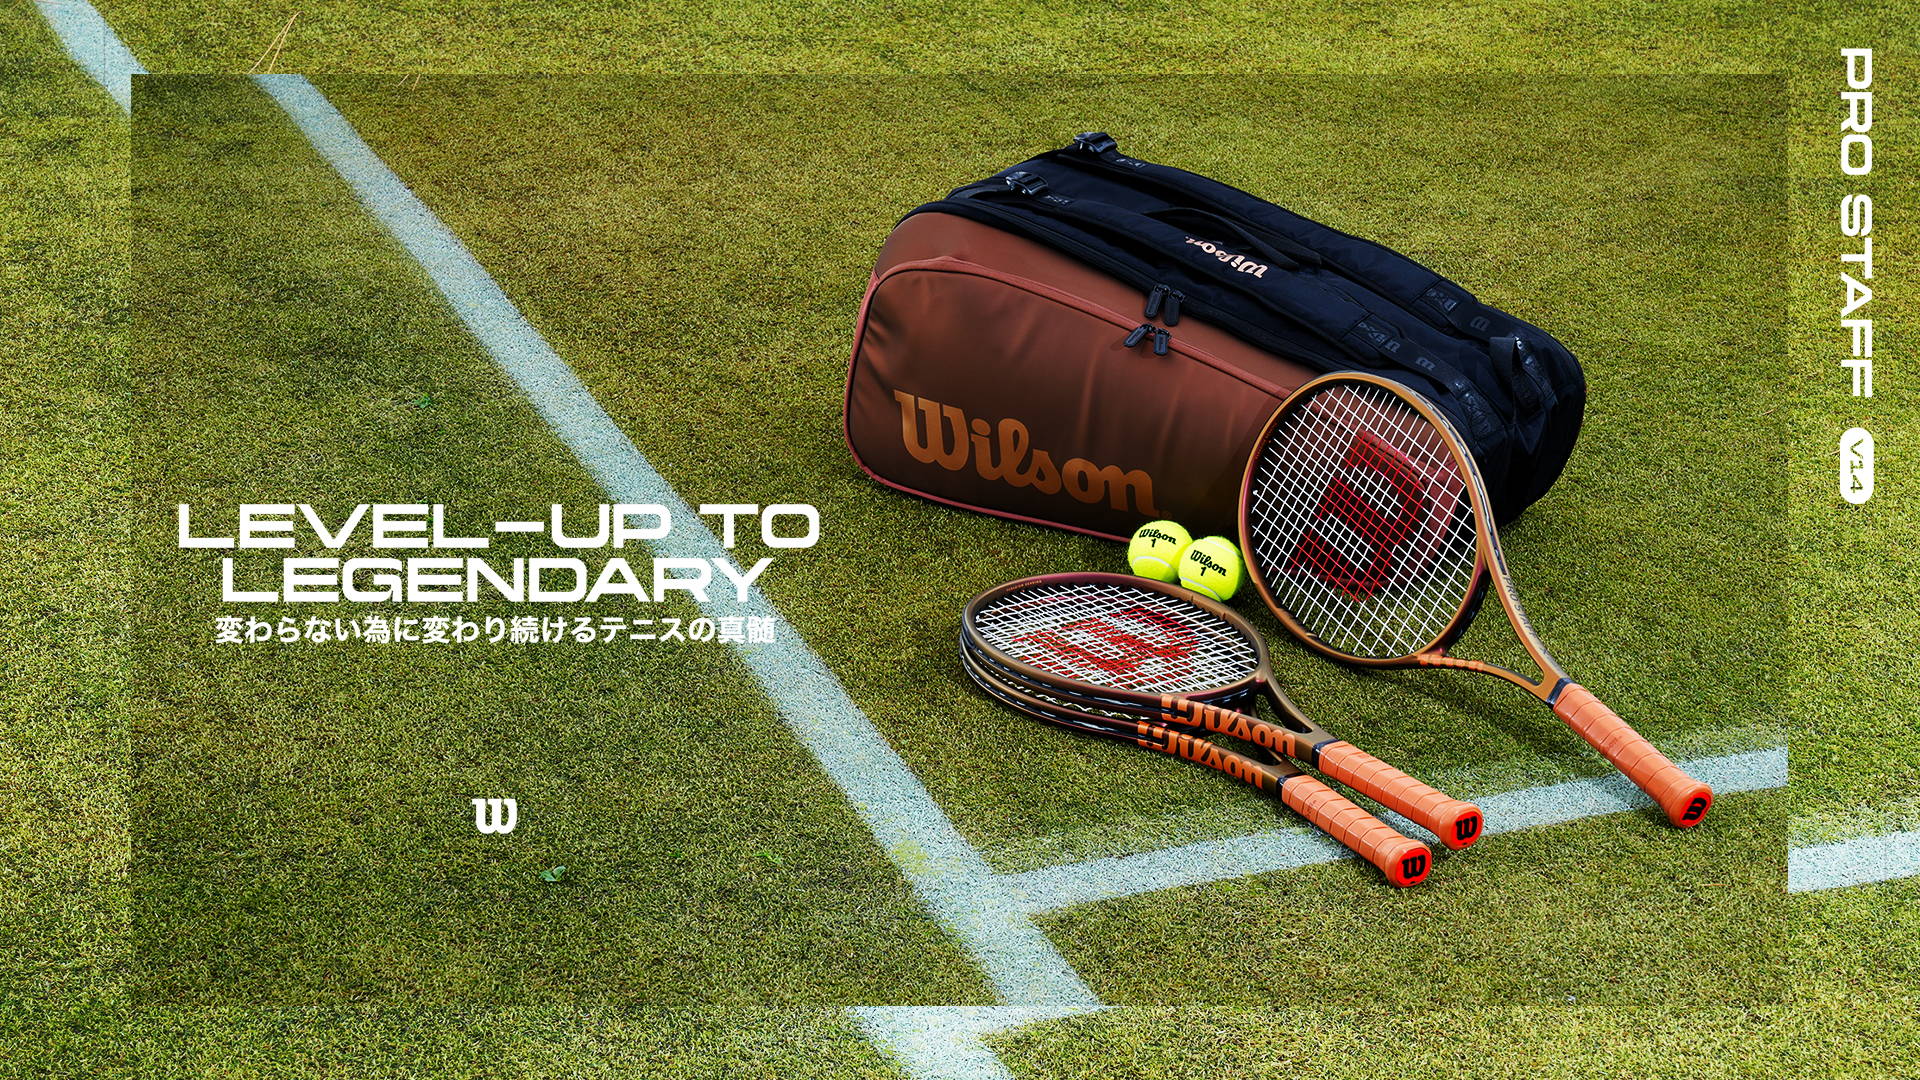 テニスラケット | Pro Staff V14 - 変わらない為に変わり続けるテニス